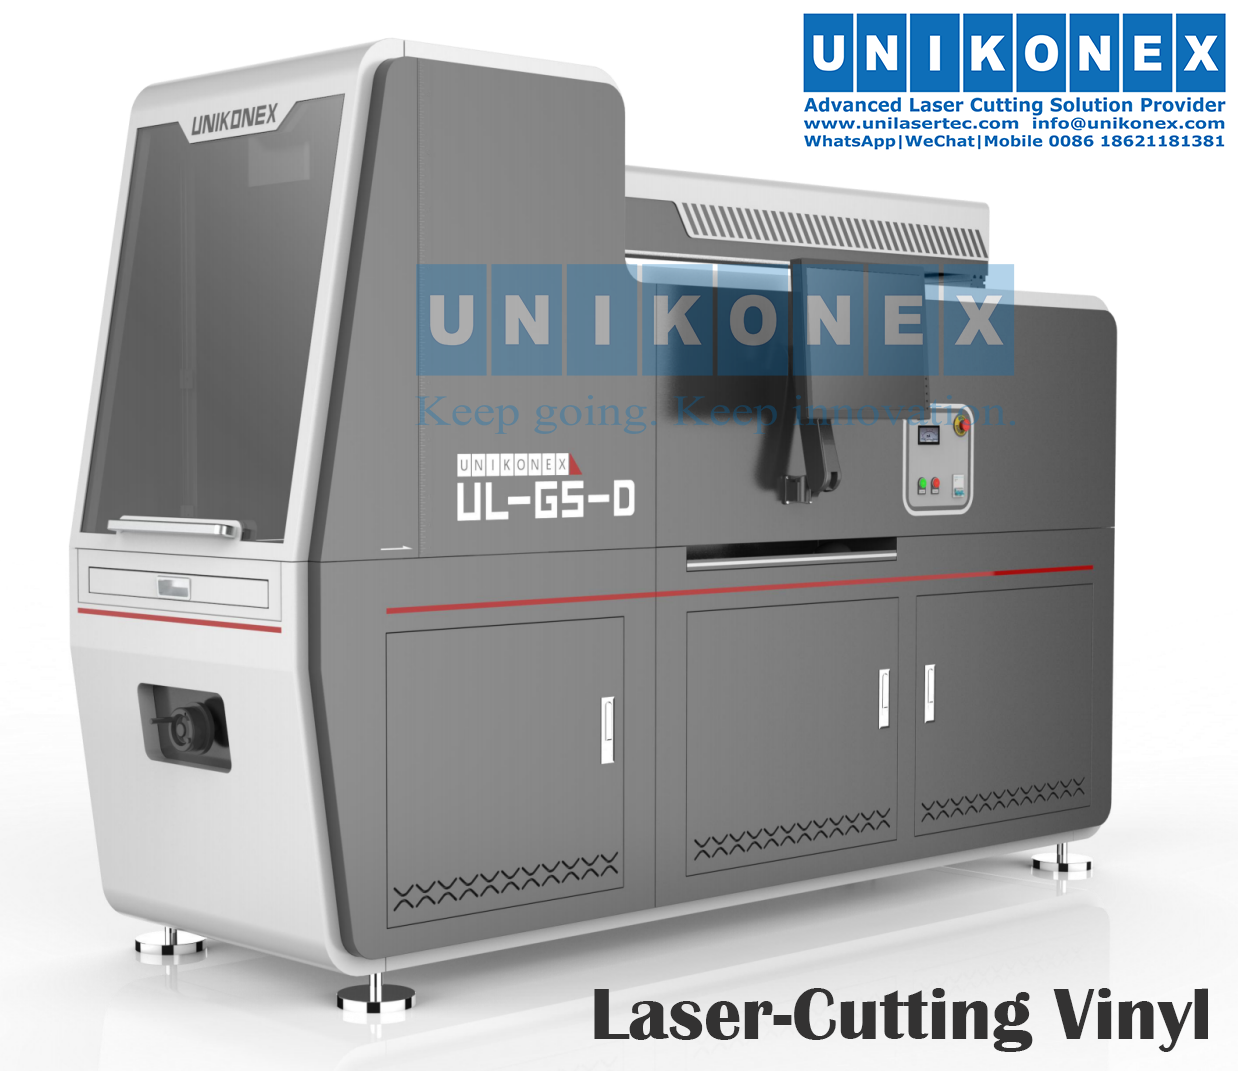  Laser-cutting vinyl machine